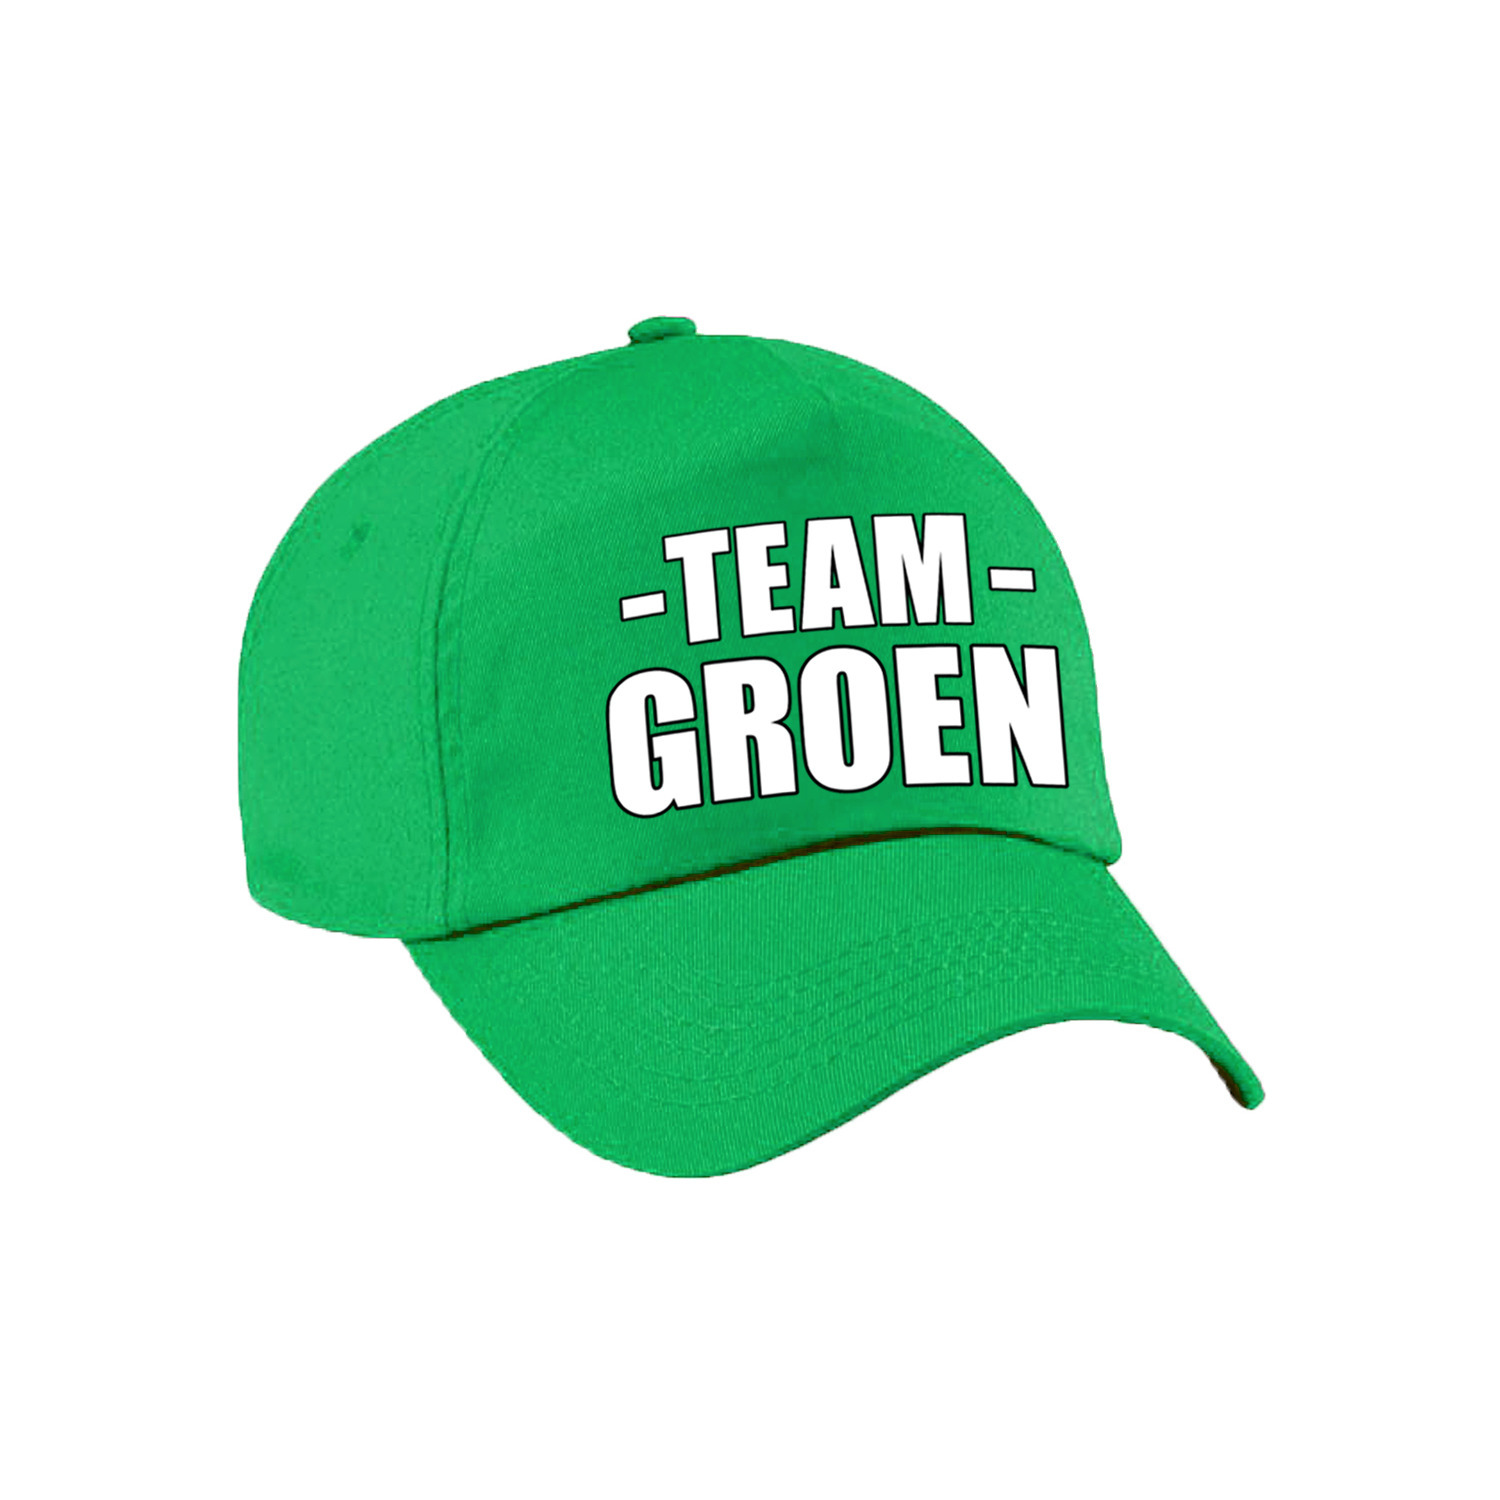 Team groen petten voor volwassenen voor training